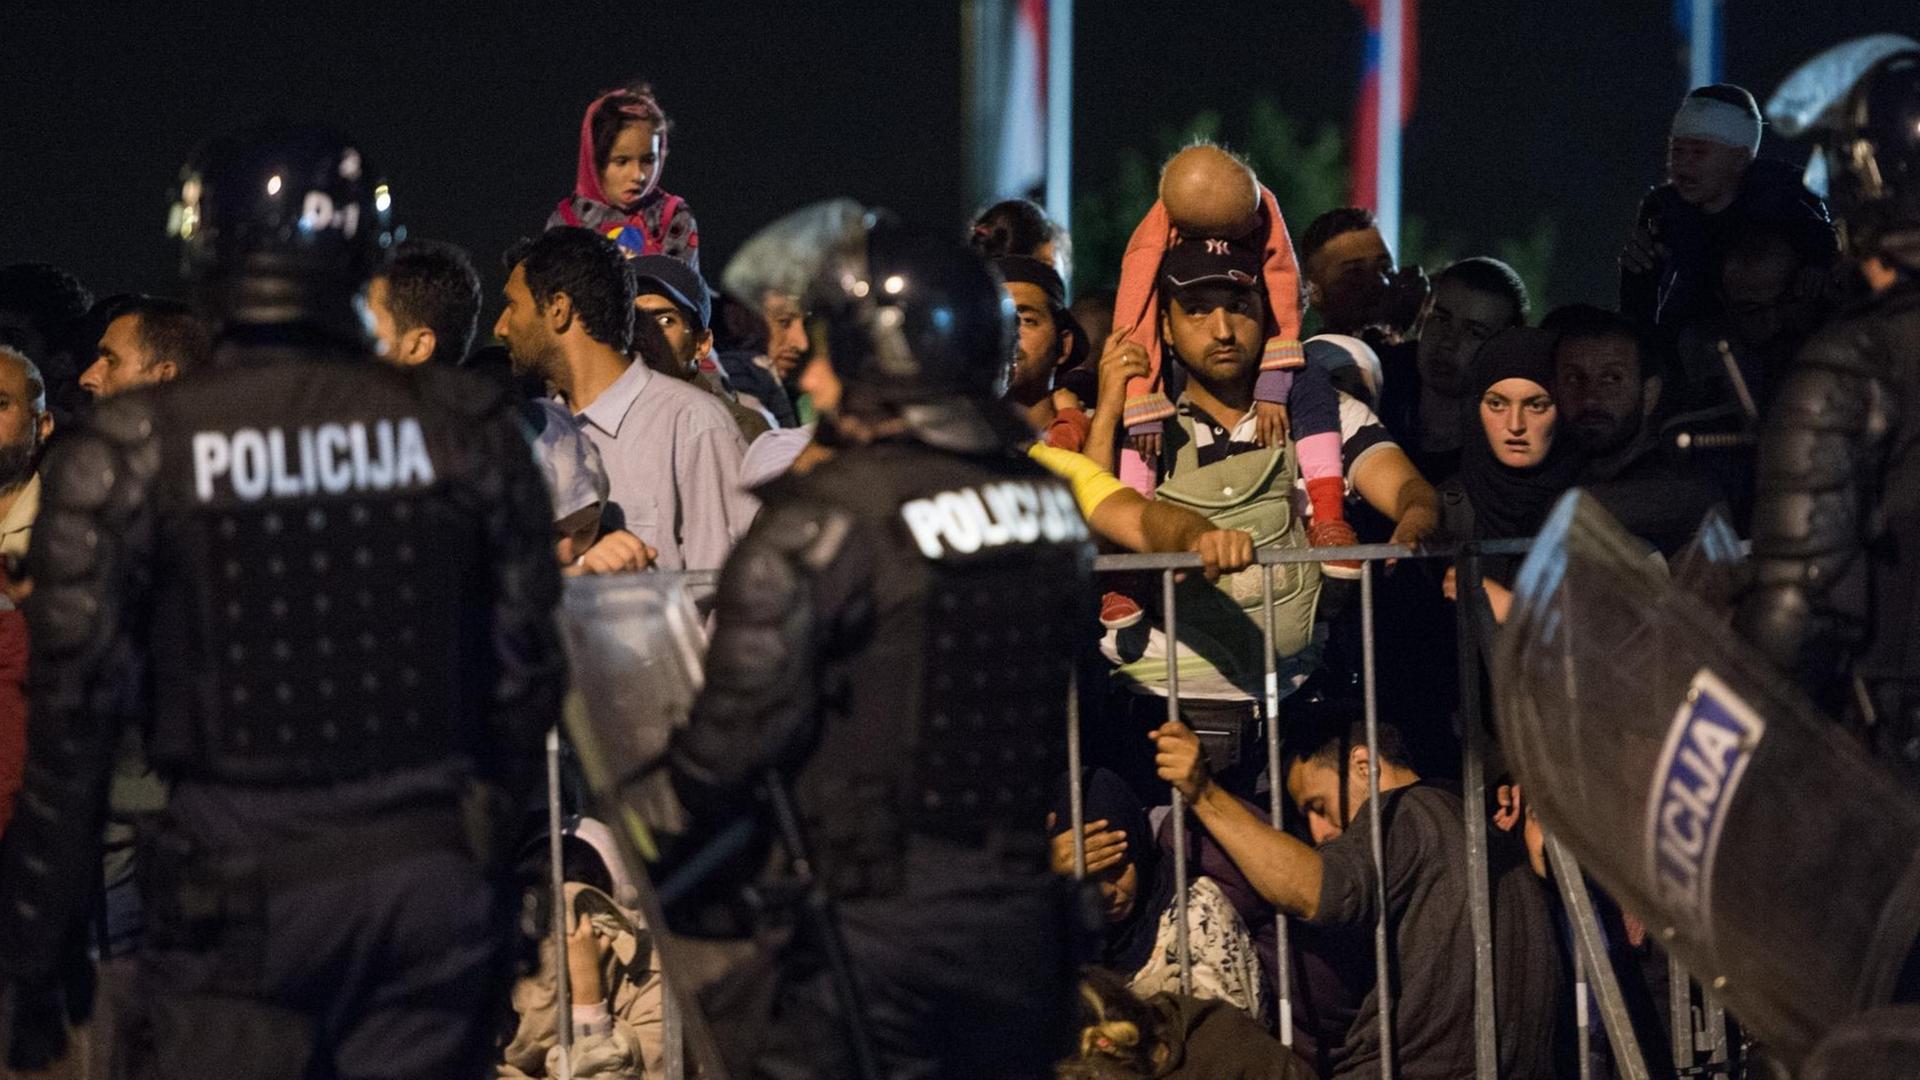 Flüchtlinge stehen am 19.09.2015 an der Grenze in Bregana zwischen Kroatien und Slowenien hinter einem Absperrgitter, davor stehen slowenische Polizisten.